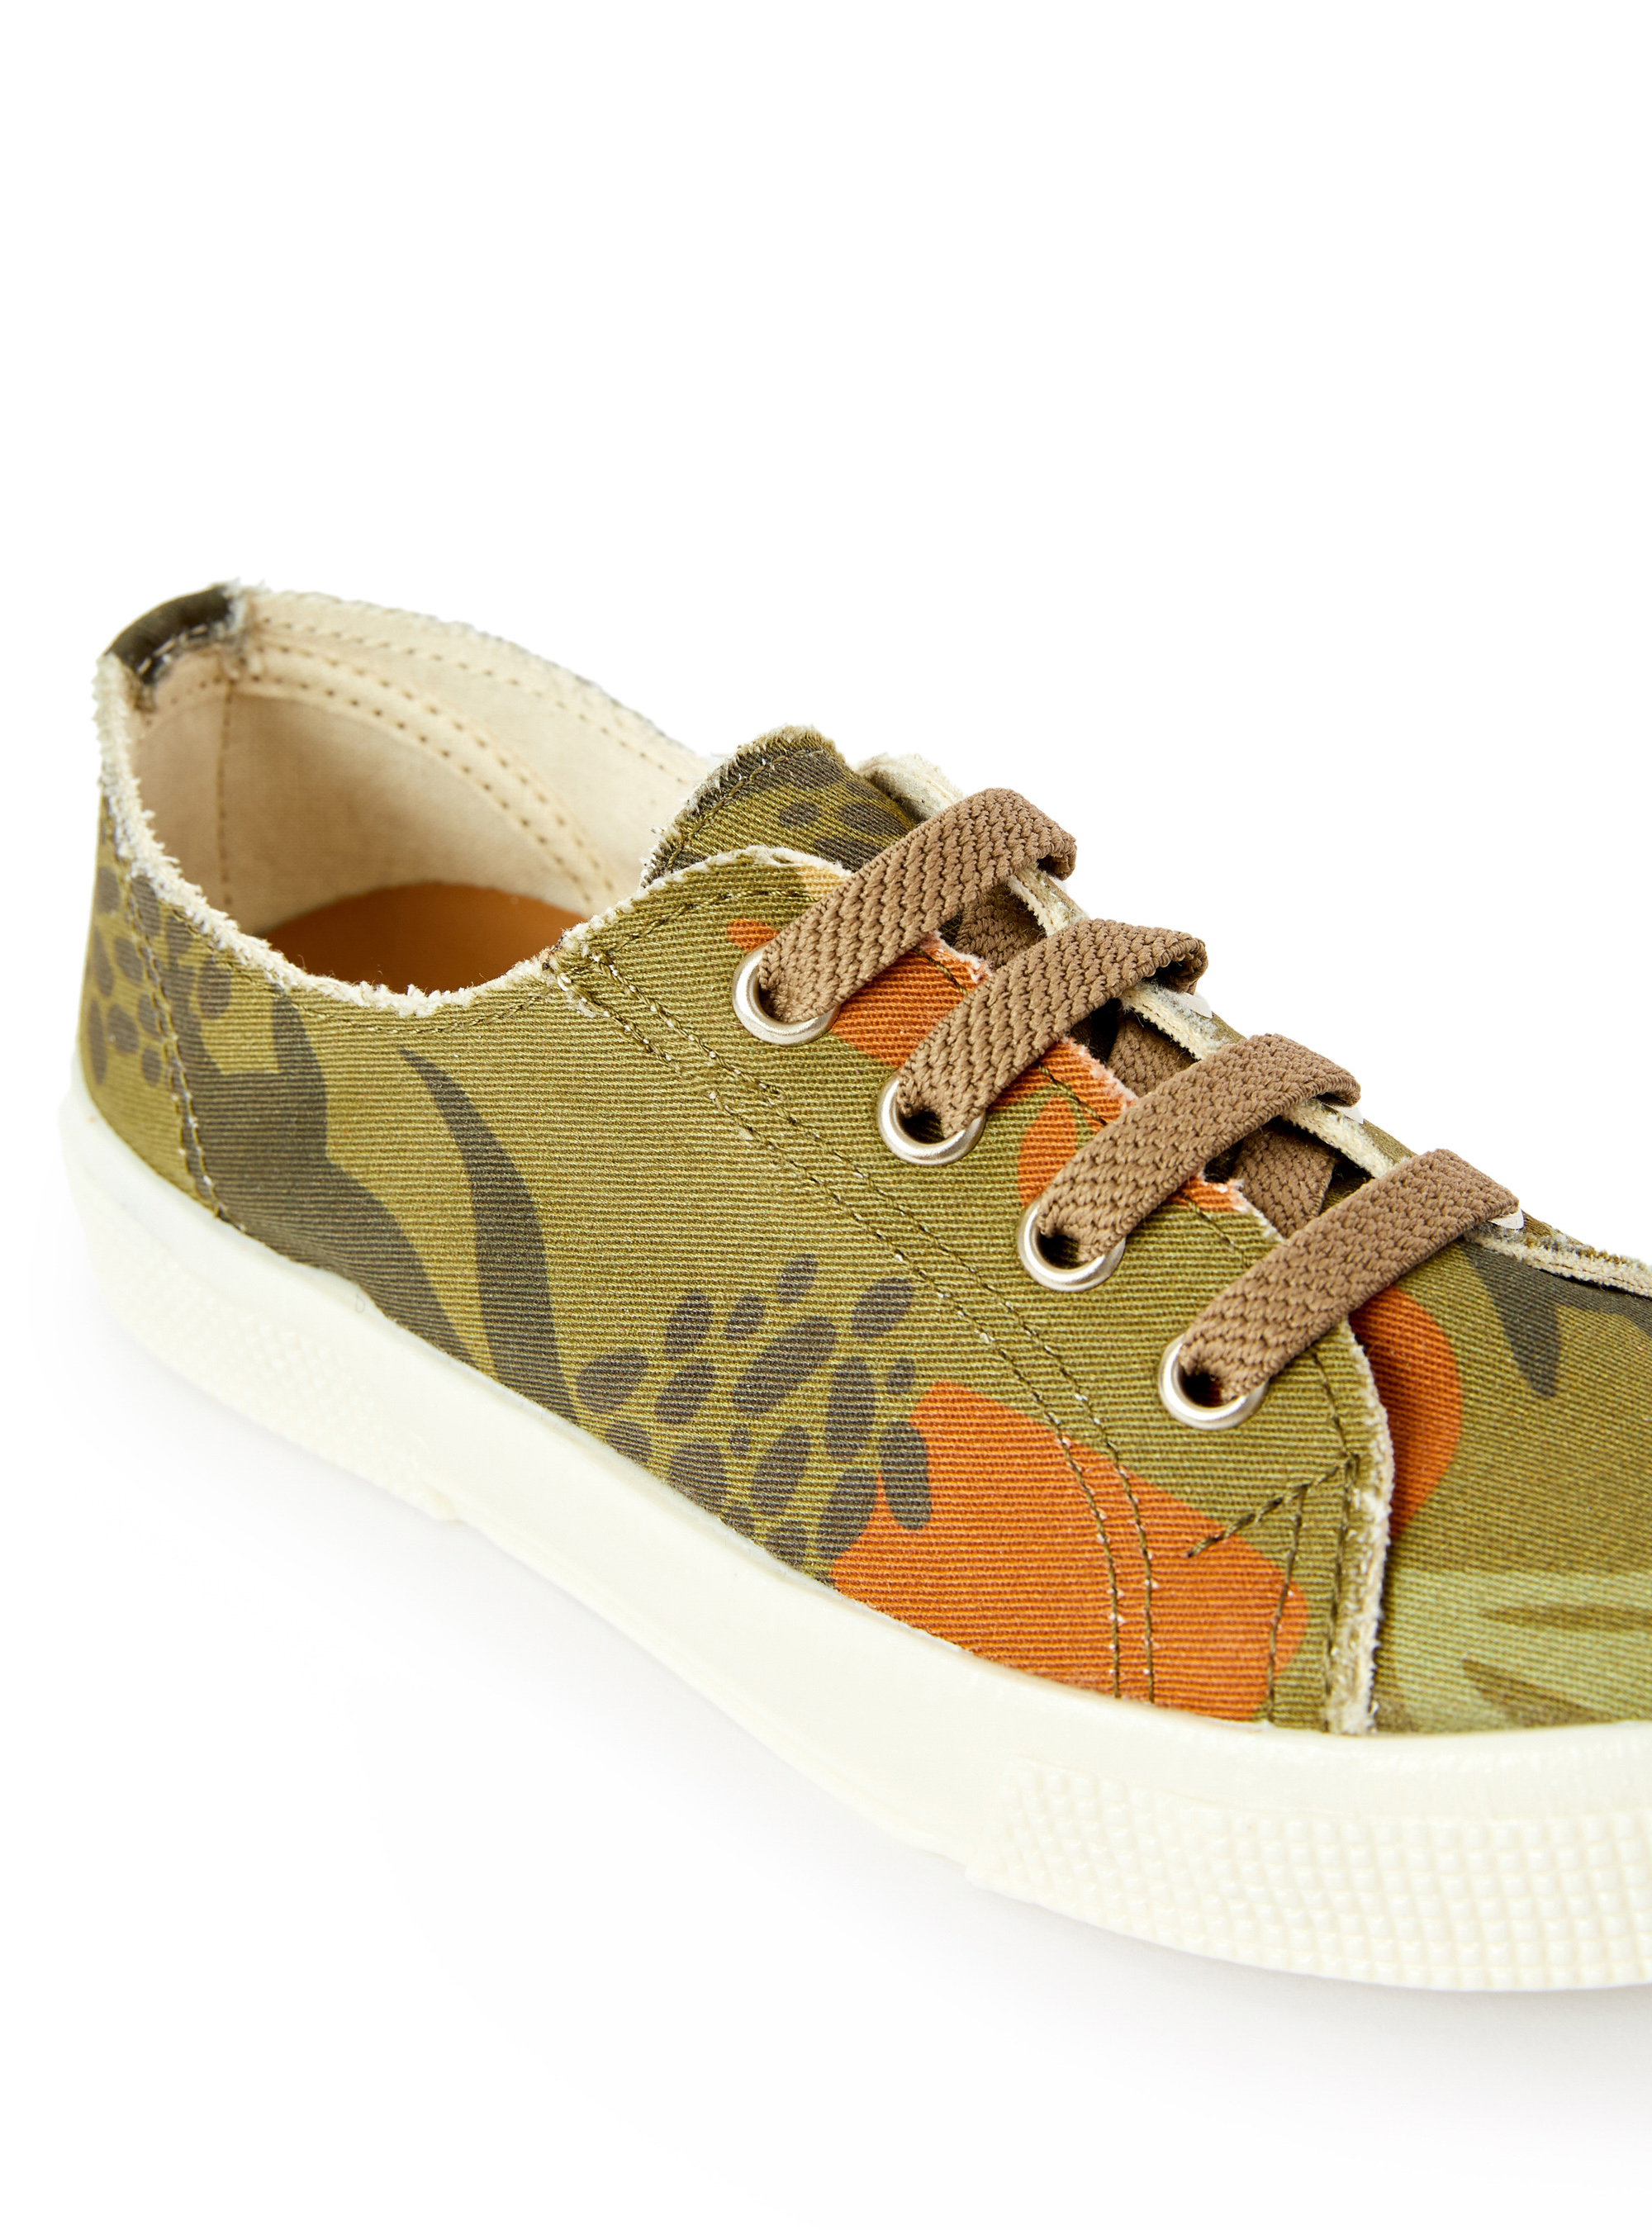 Sneakers en toile avec imprimé camouflage - Vert | Il Gufo